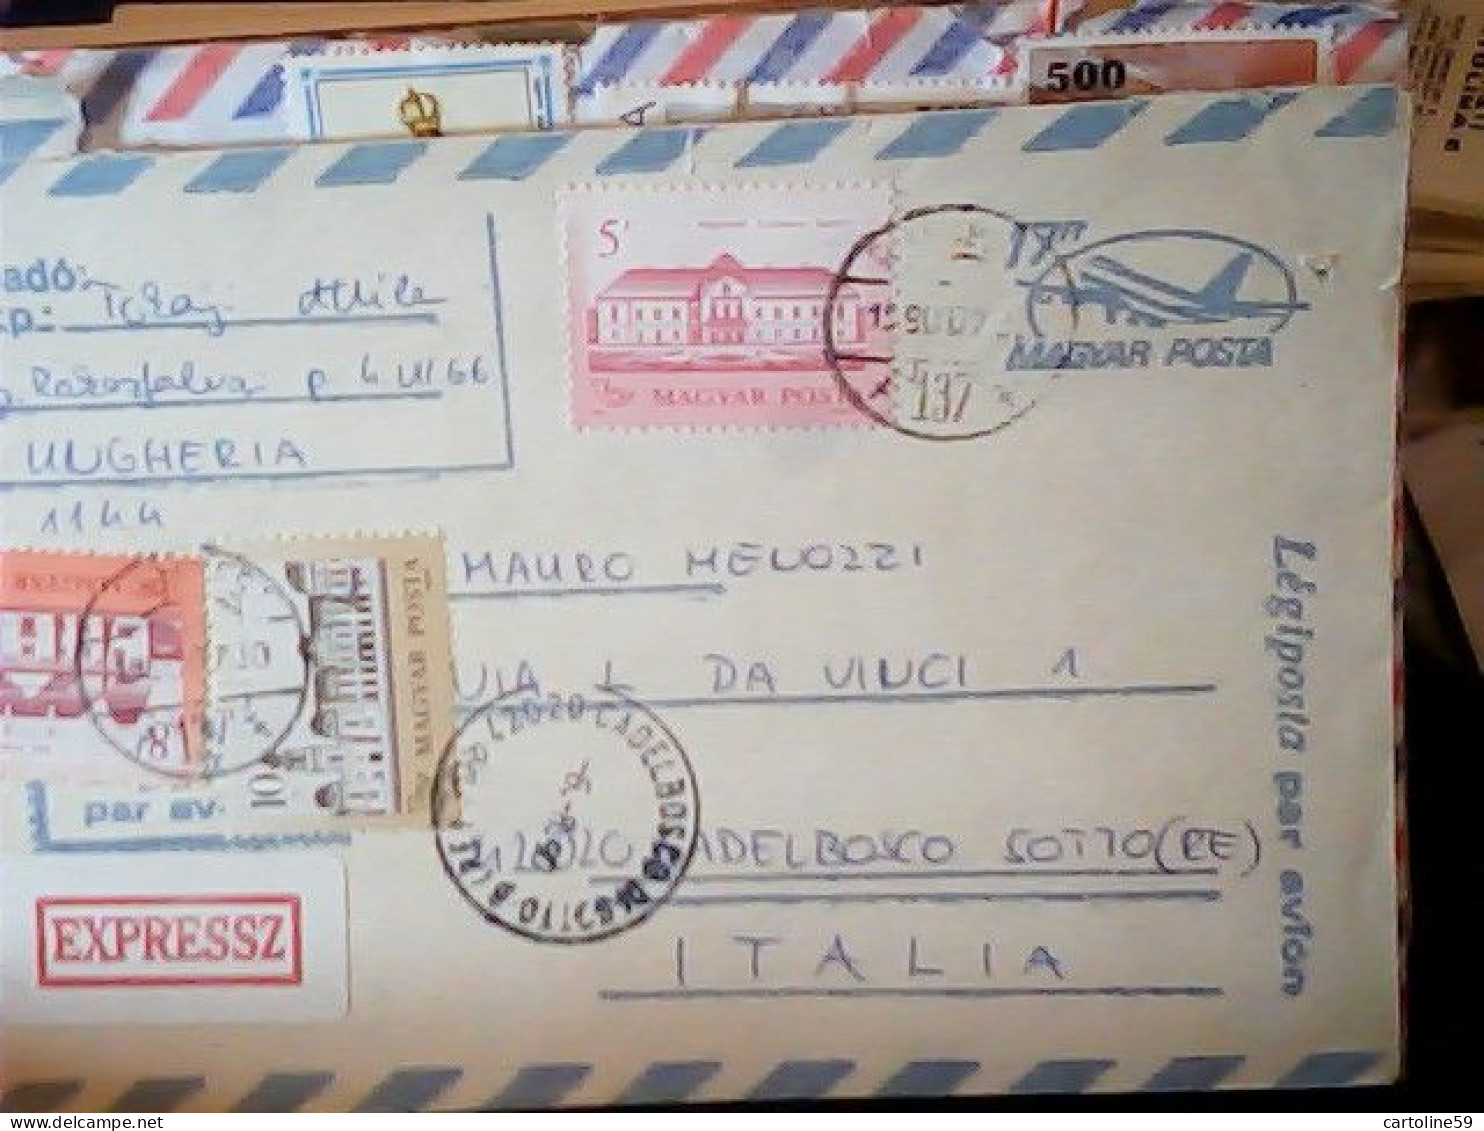 2 BUSTE UNGHERIA (HUNGERY )- MAGYAR 1990 Airmail  3 5 8 10 20 FT JR5043 - Brieven En Documenten